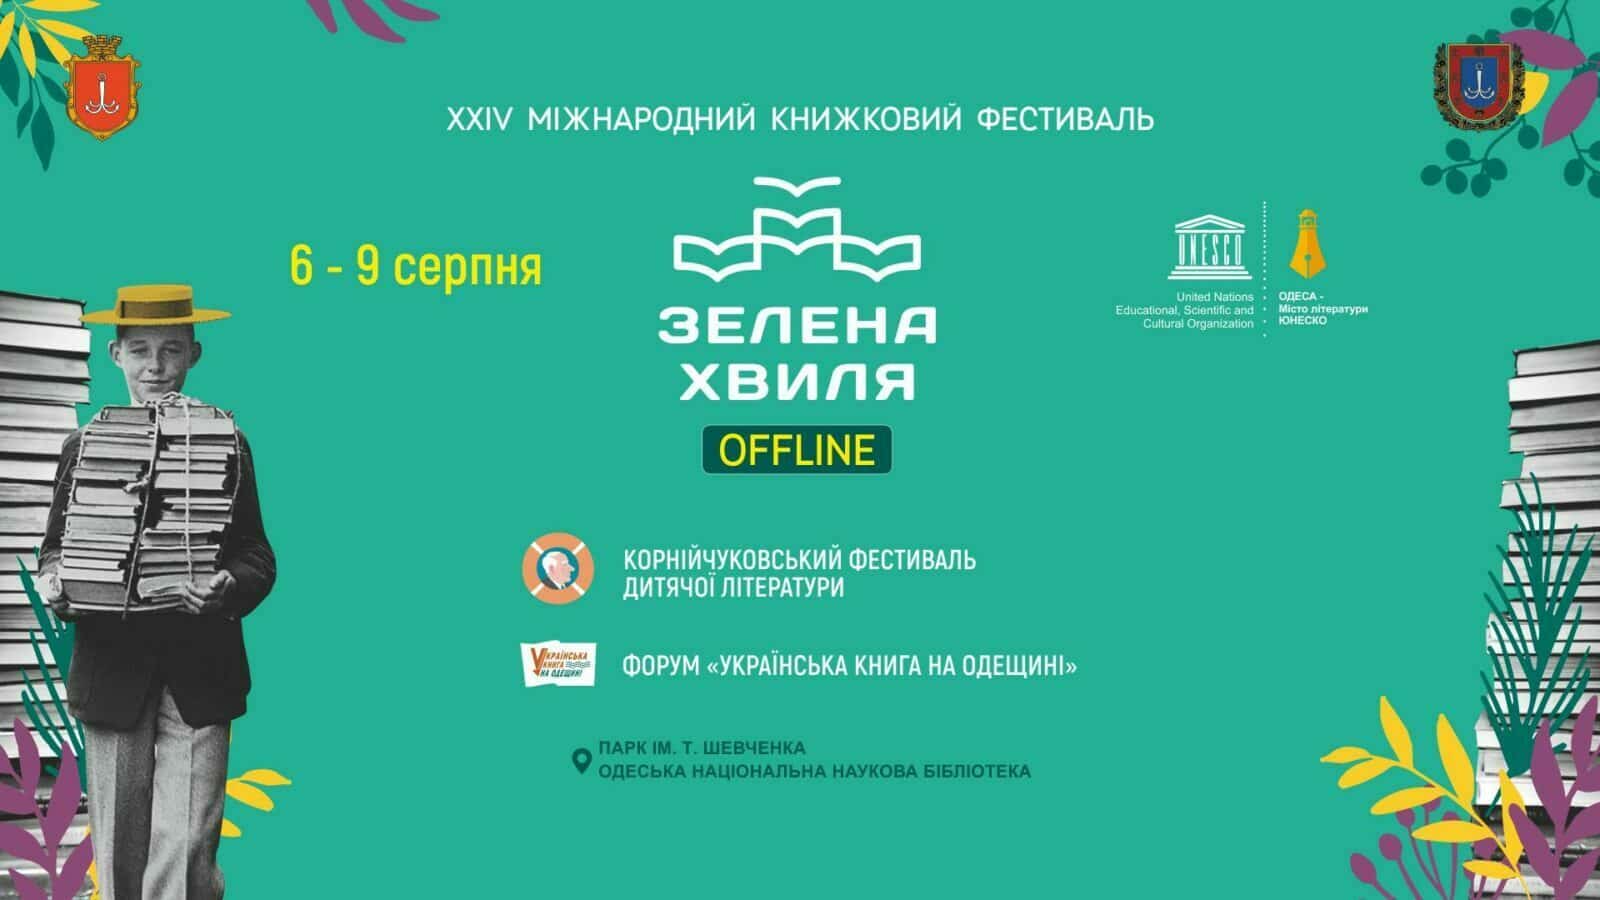 Виставка книг в Одесі 2020